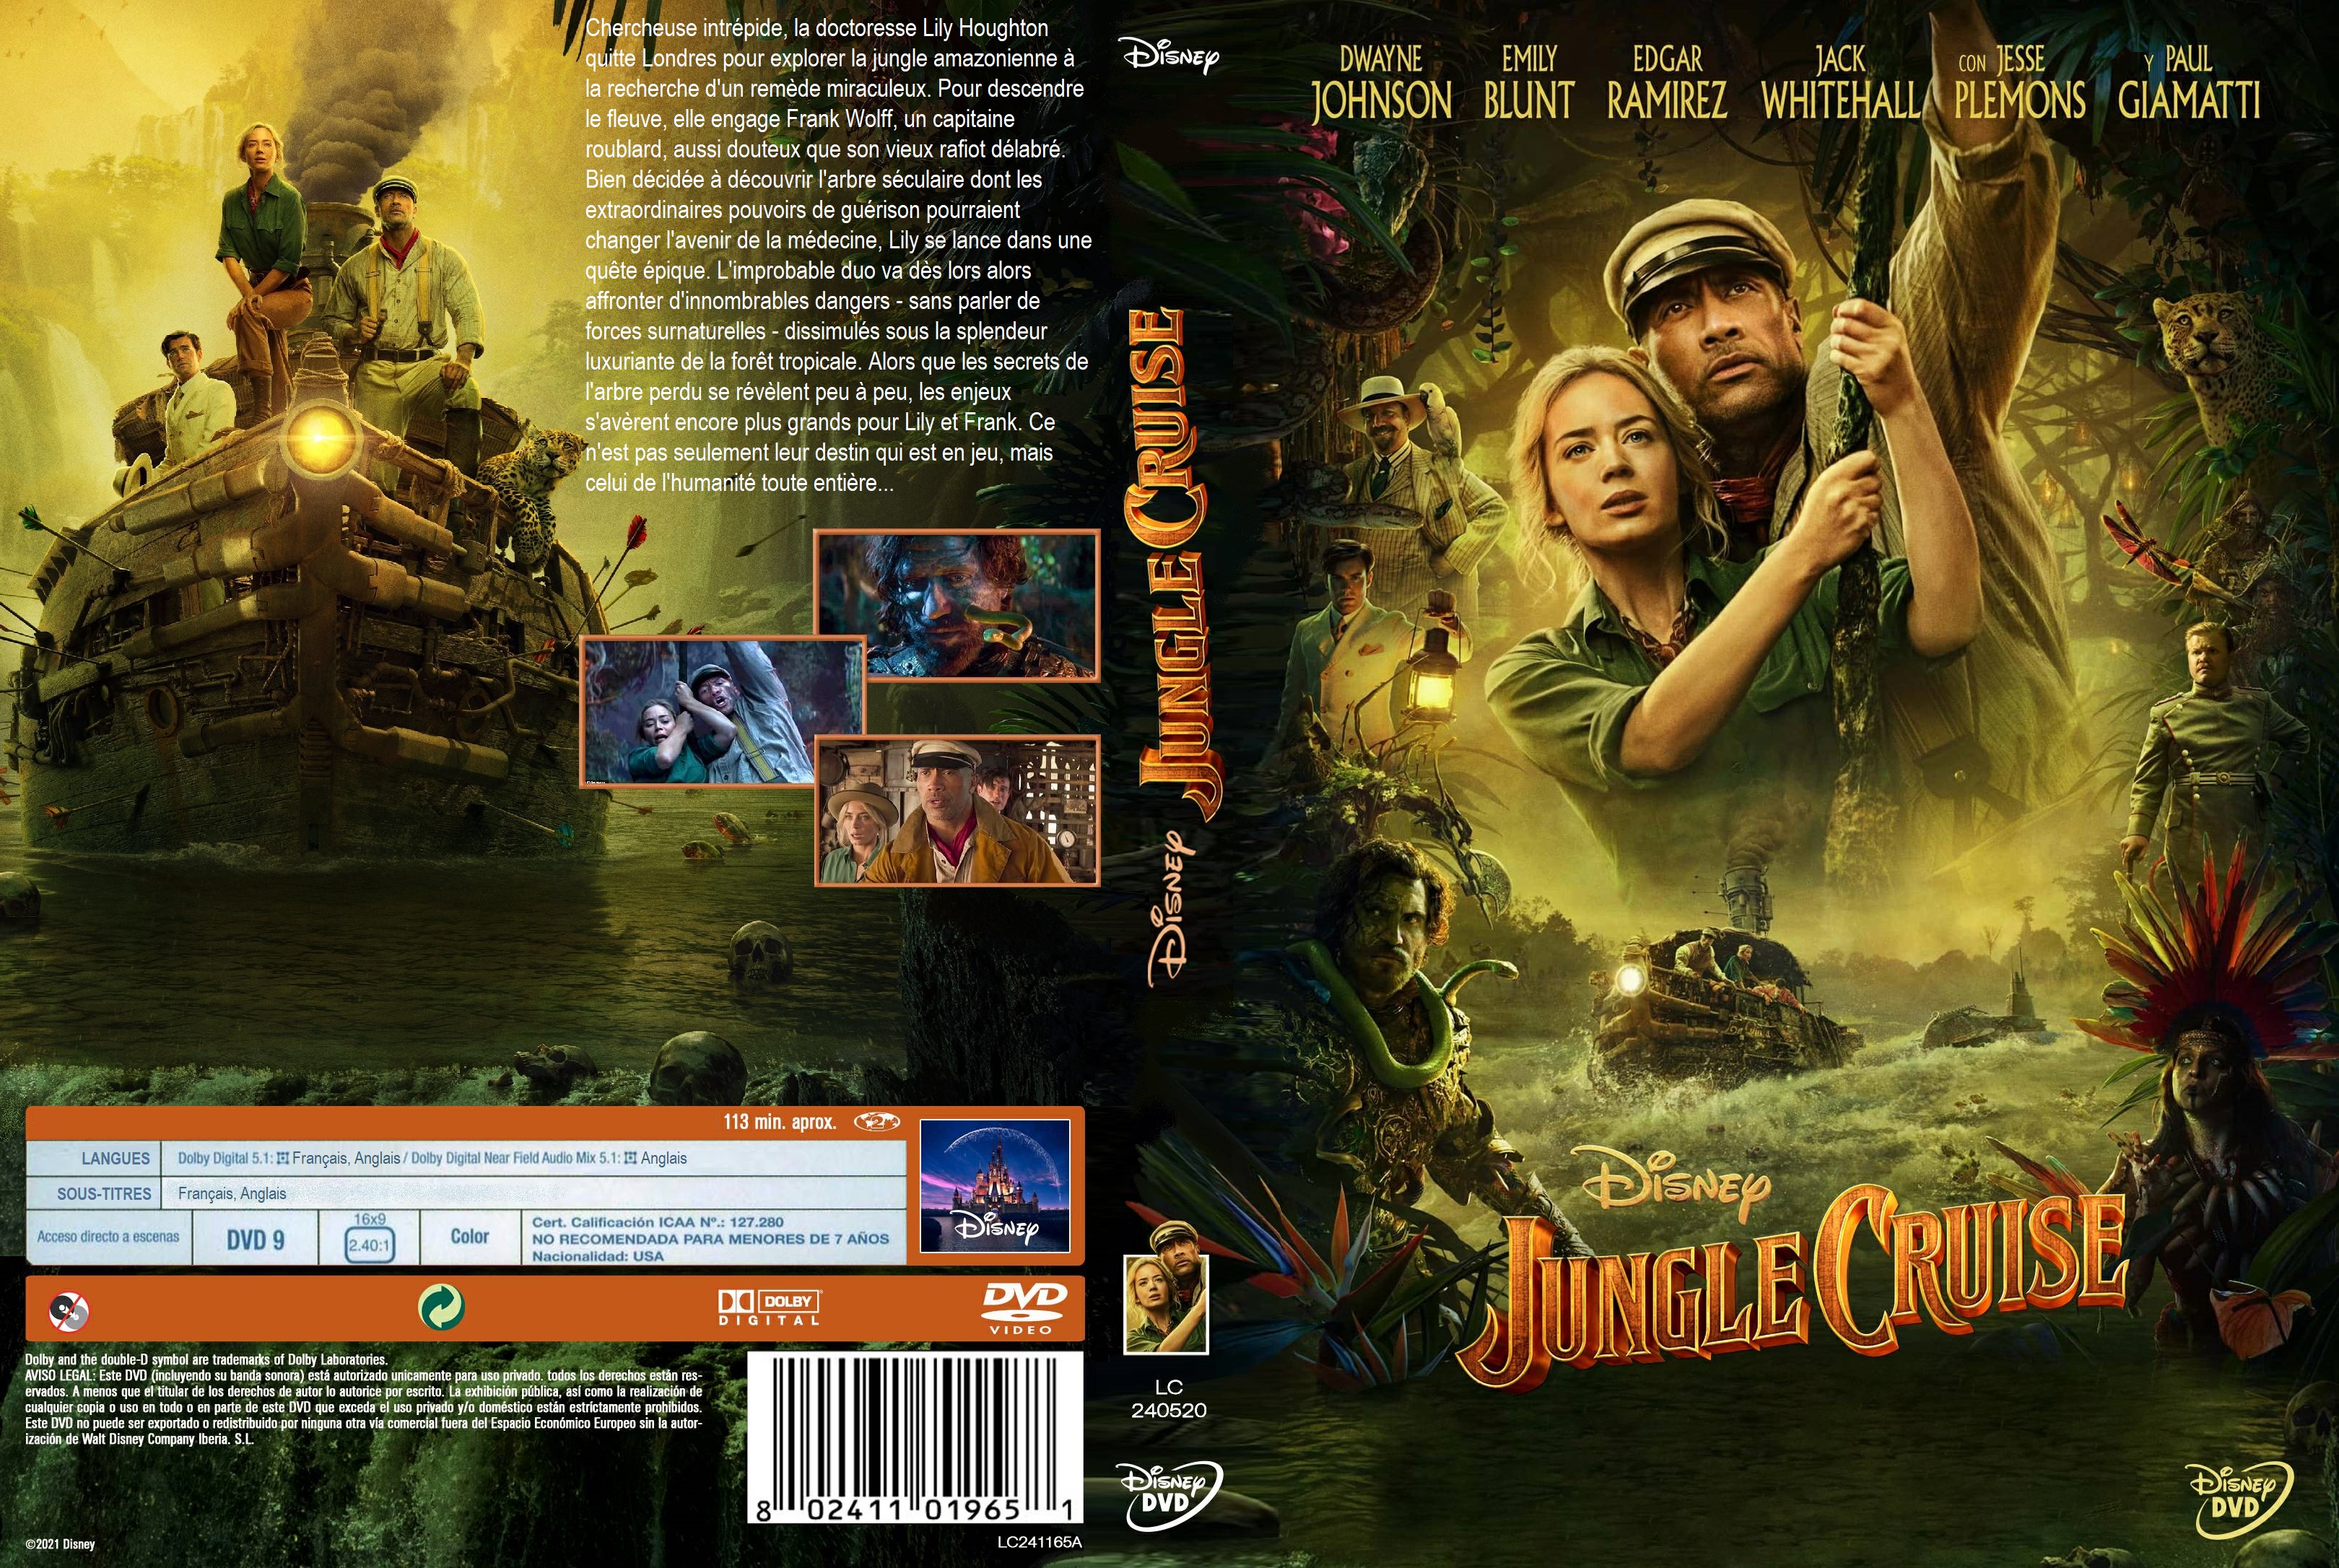 Jaquette DVD Jungle Cruise custom